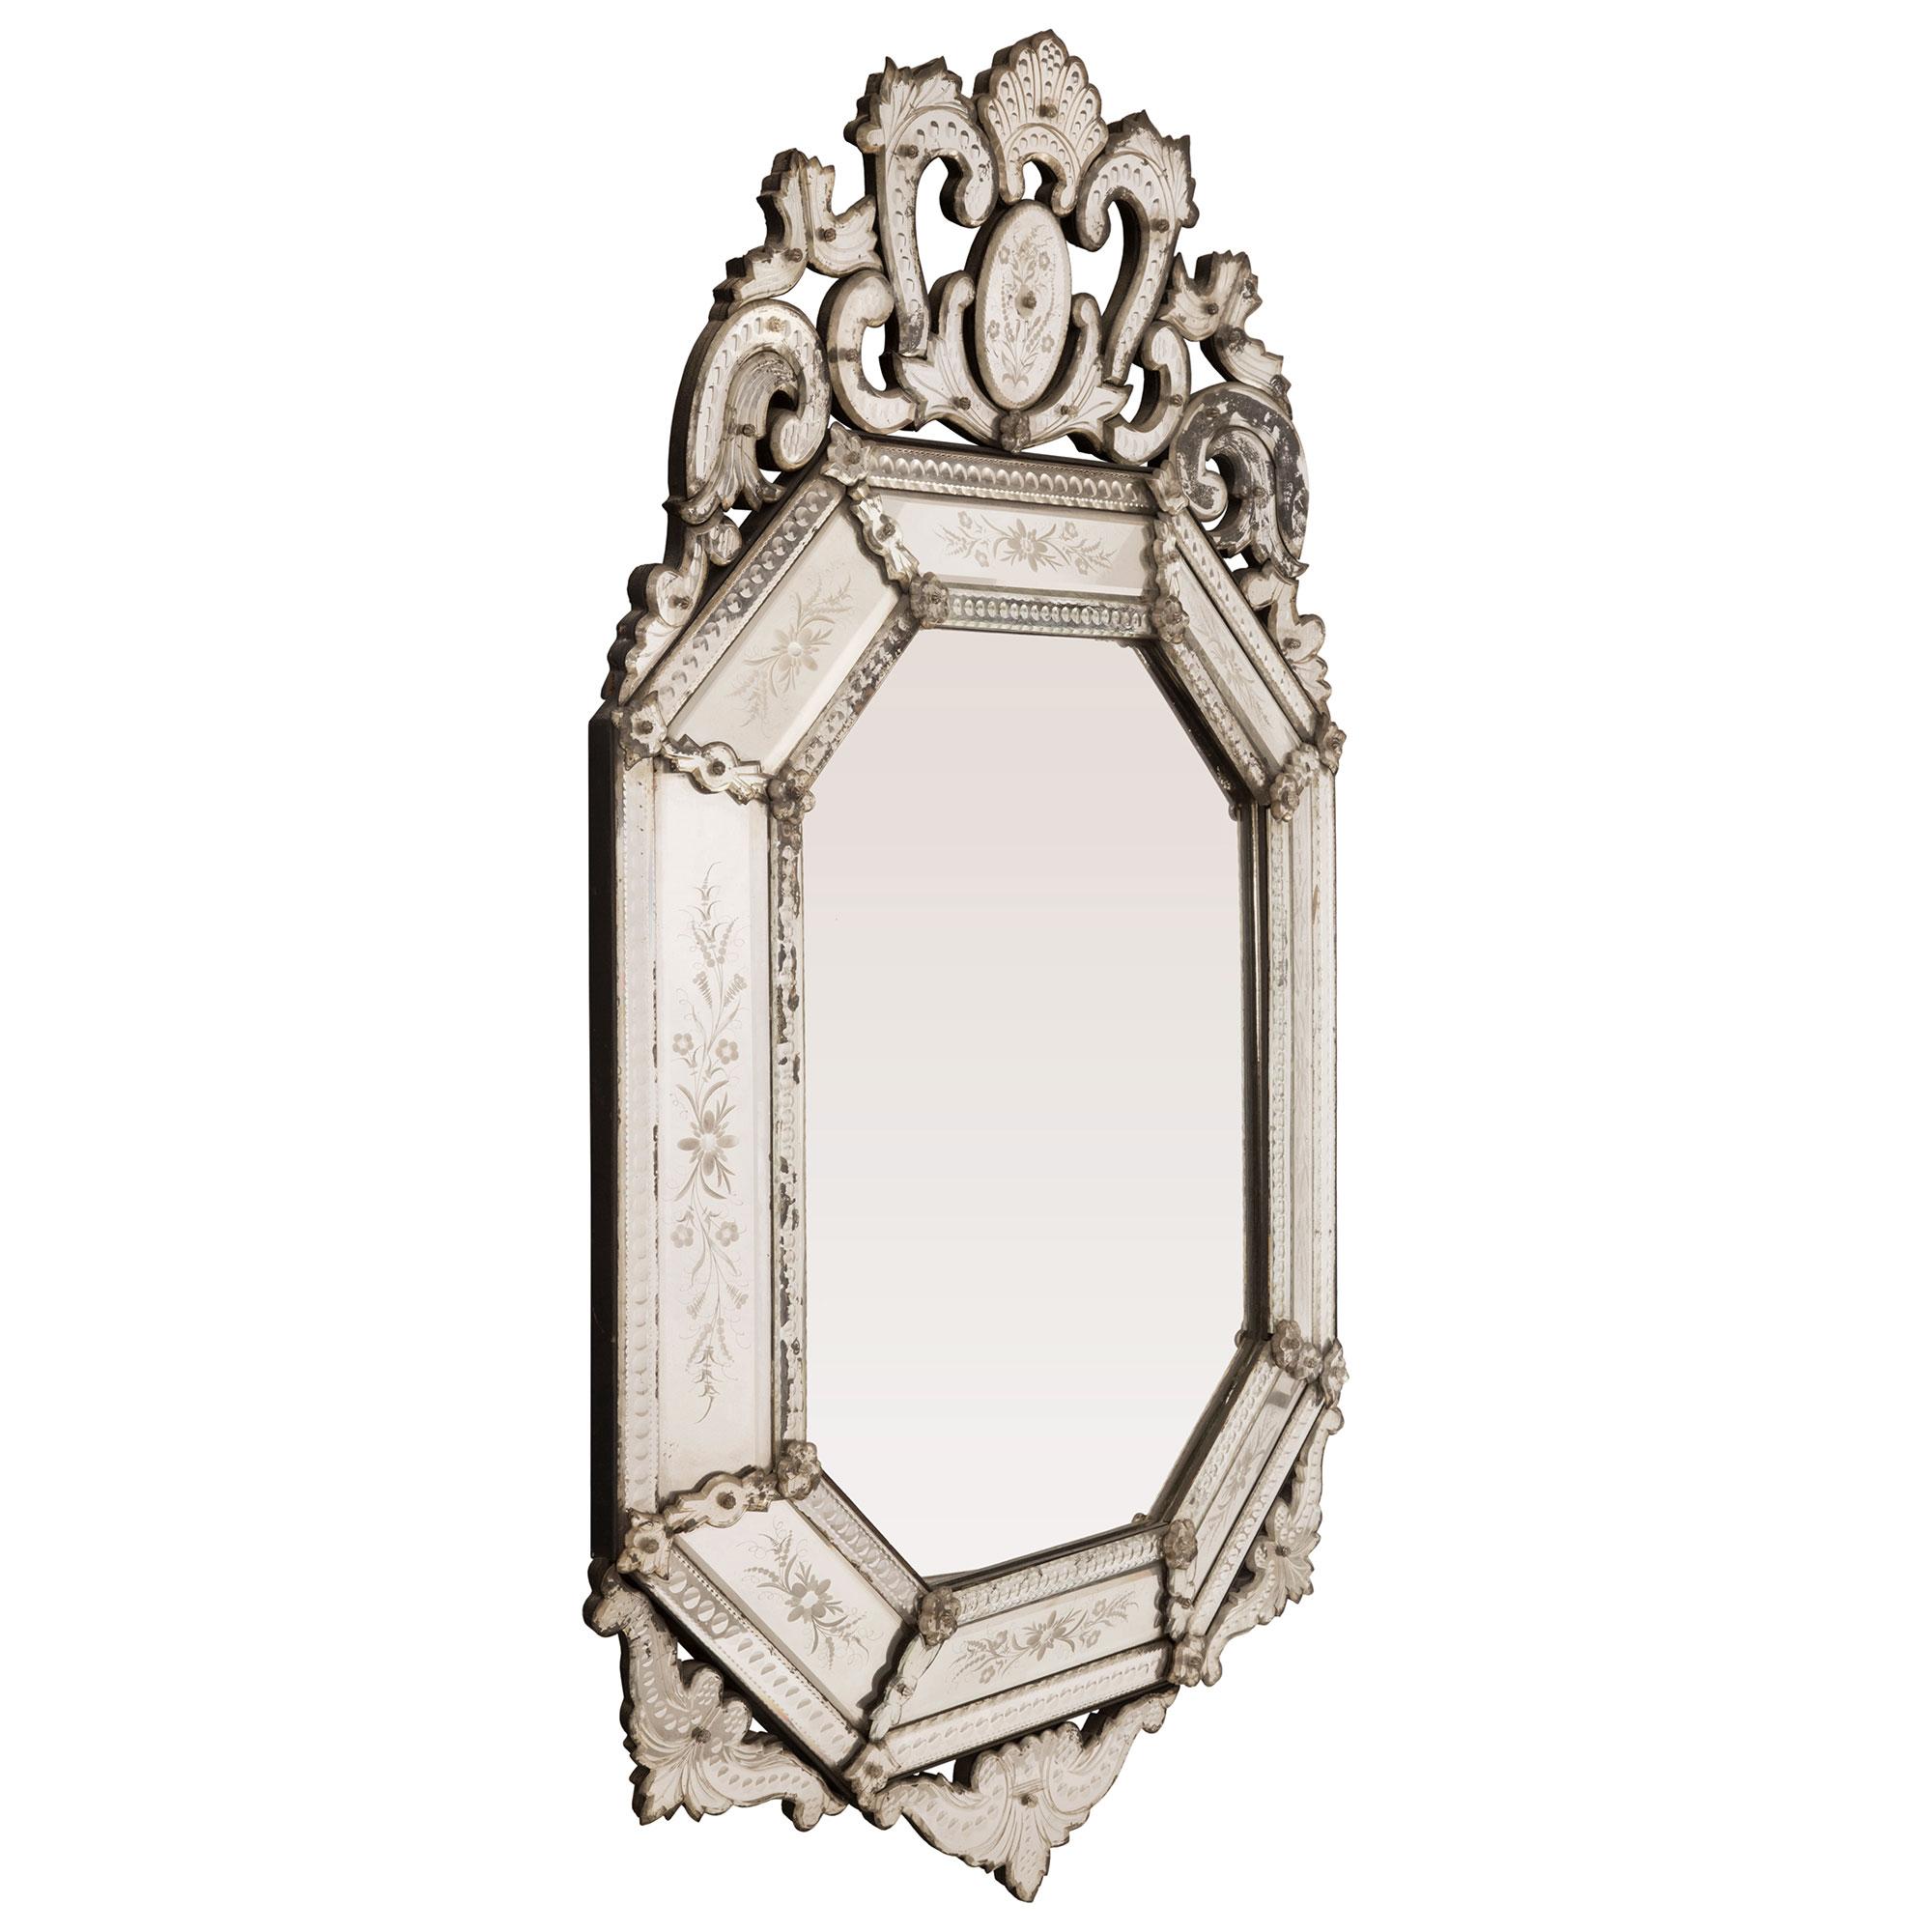 Superbe miroir italien du début du siècle, à double encadrement, de style vénitien. Le miroir de forme octogonale a conservé toutes ses plaques d'origine, la plaque centrale étant encadrée d'un ravissant motif perlé. Les plaques de miroir